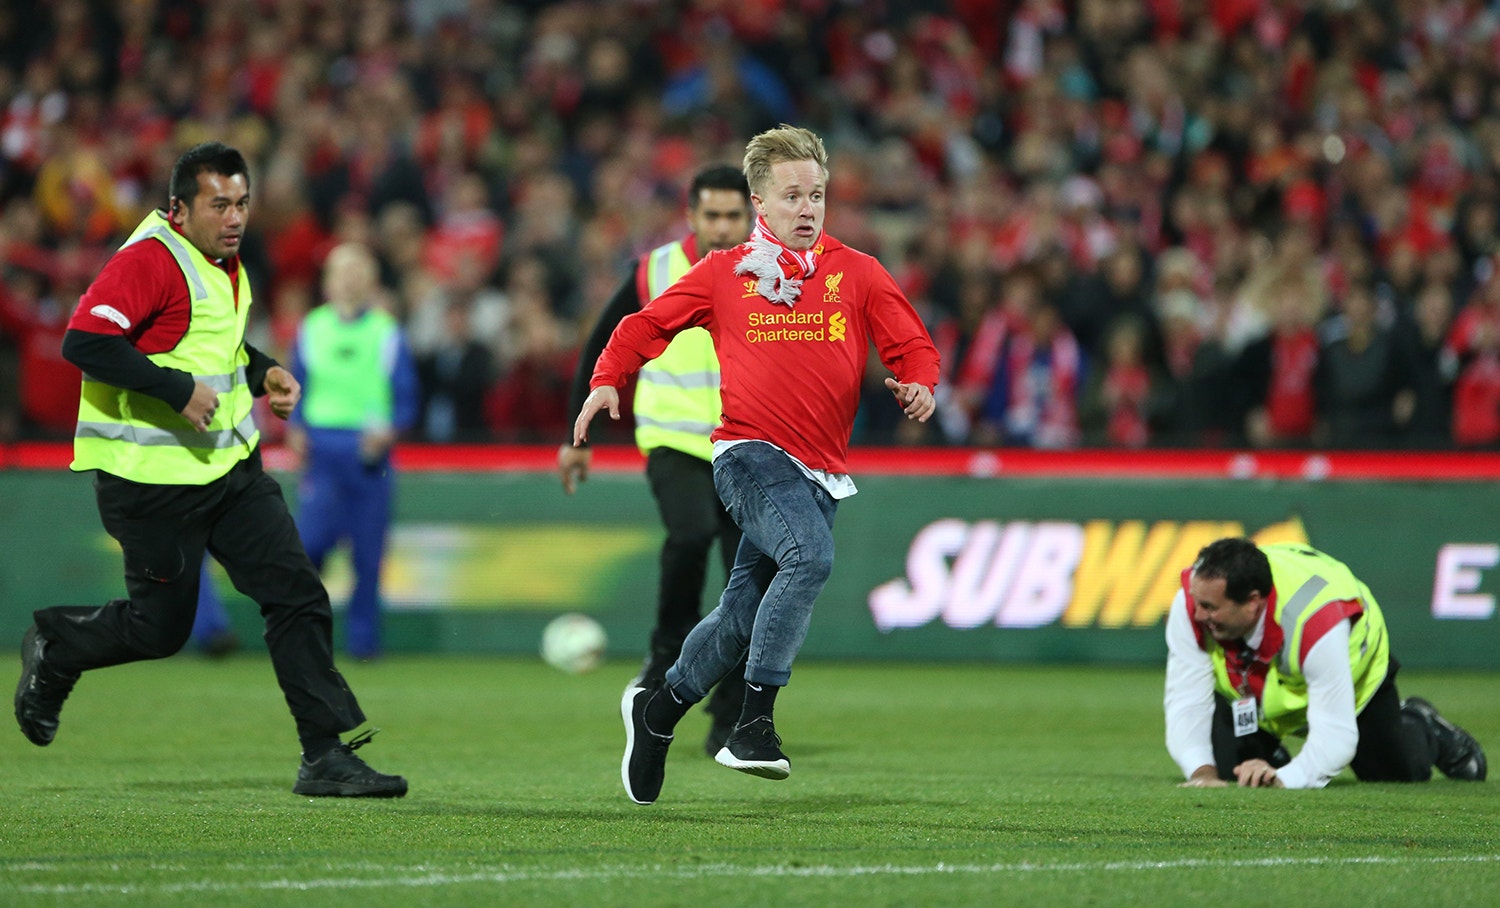  Jogo entre o Adelaide United e o Liverpool em 2015 /Jason O'Brien - Action Images via Reuters 